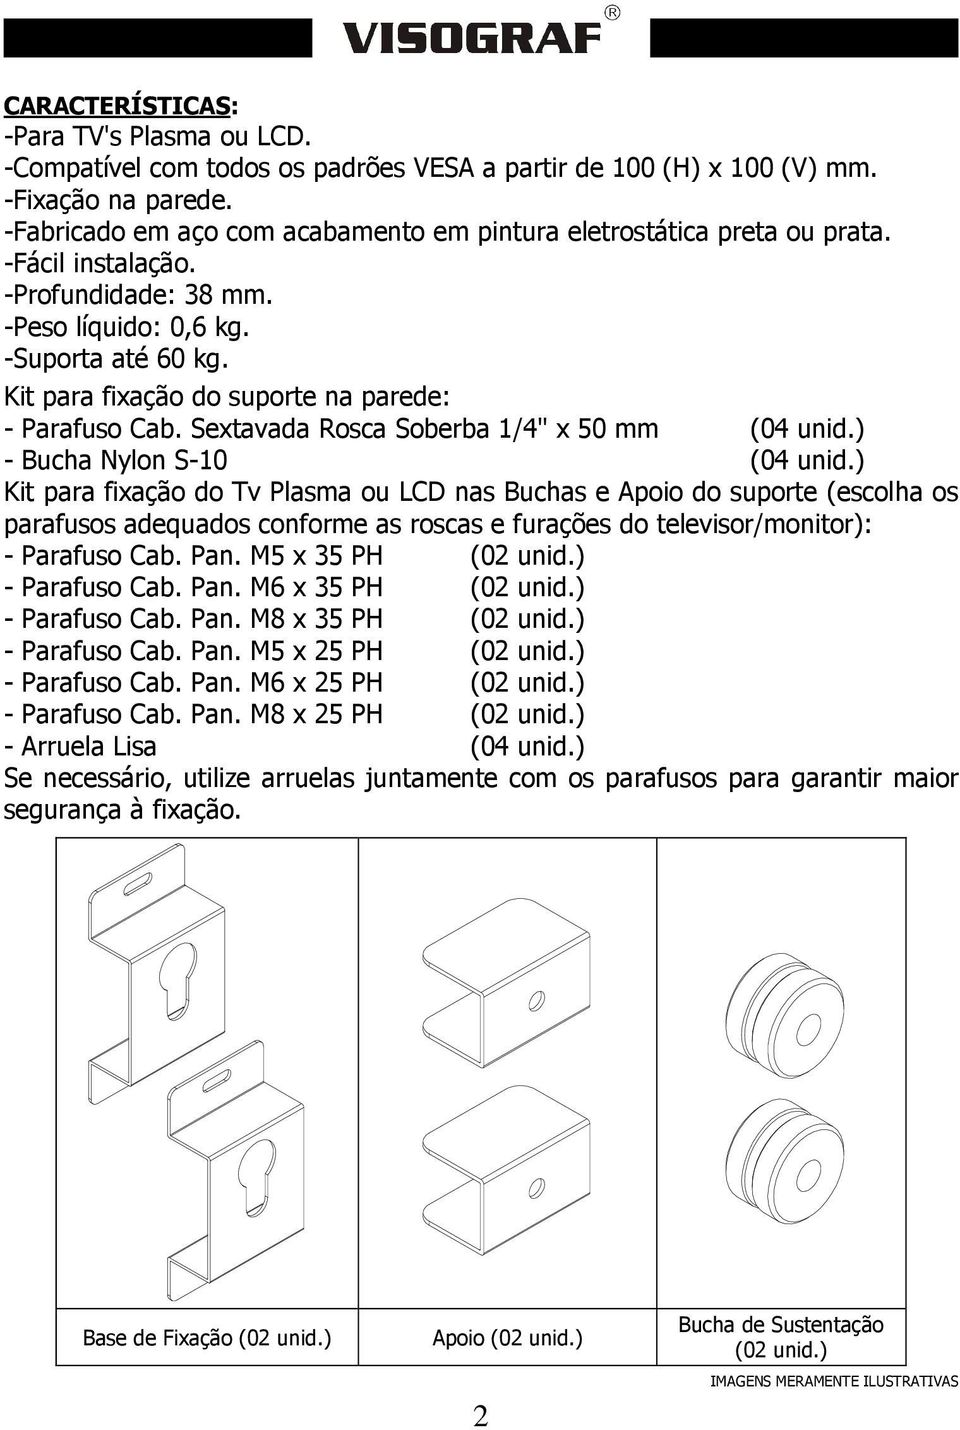 Kit para fixação do suporte na parede: - Parafuso Cab. Sextavada Rosca Soberba 1/4" x 50 mm (04 unid.) - Bucha Nylon S-10 (04 unid.